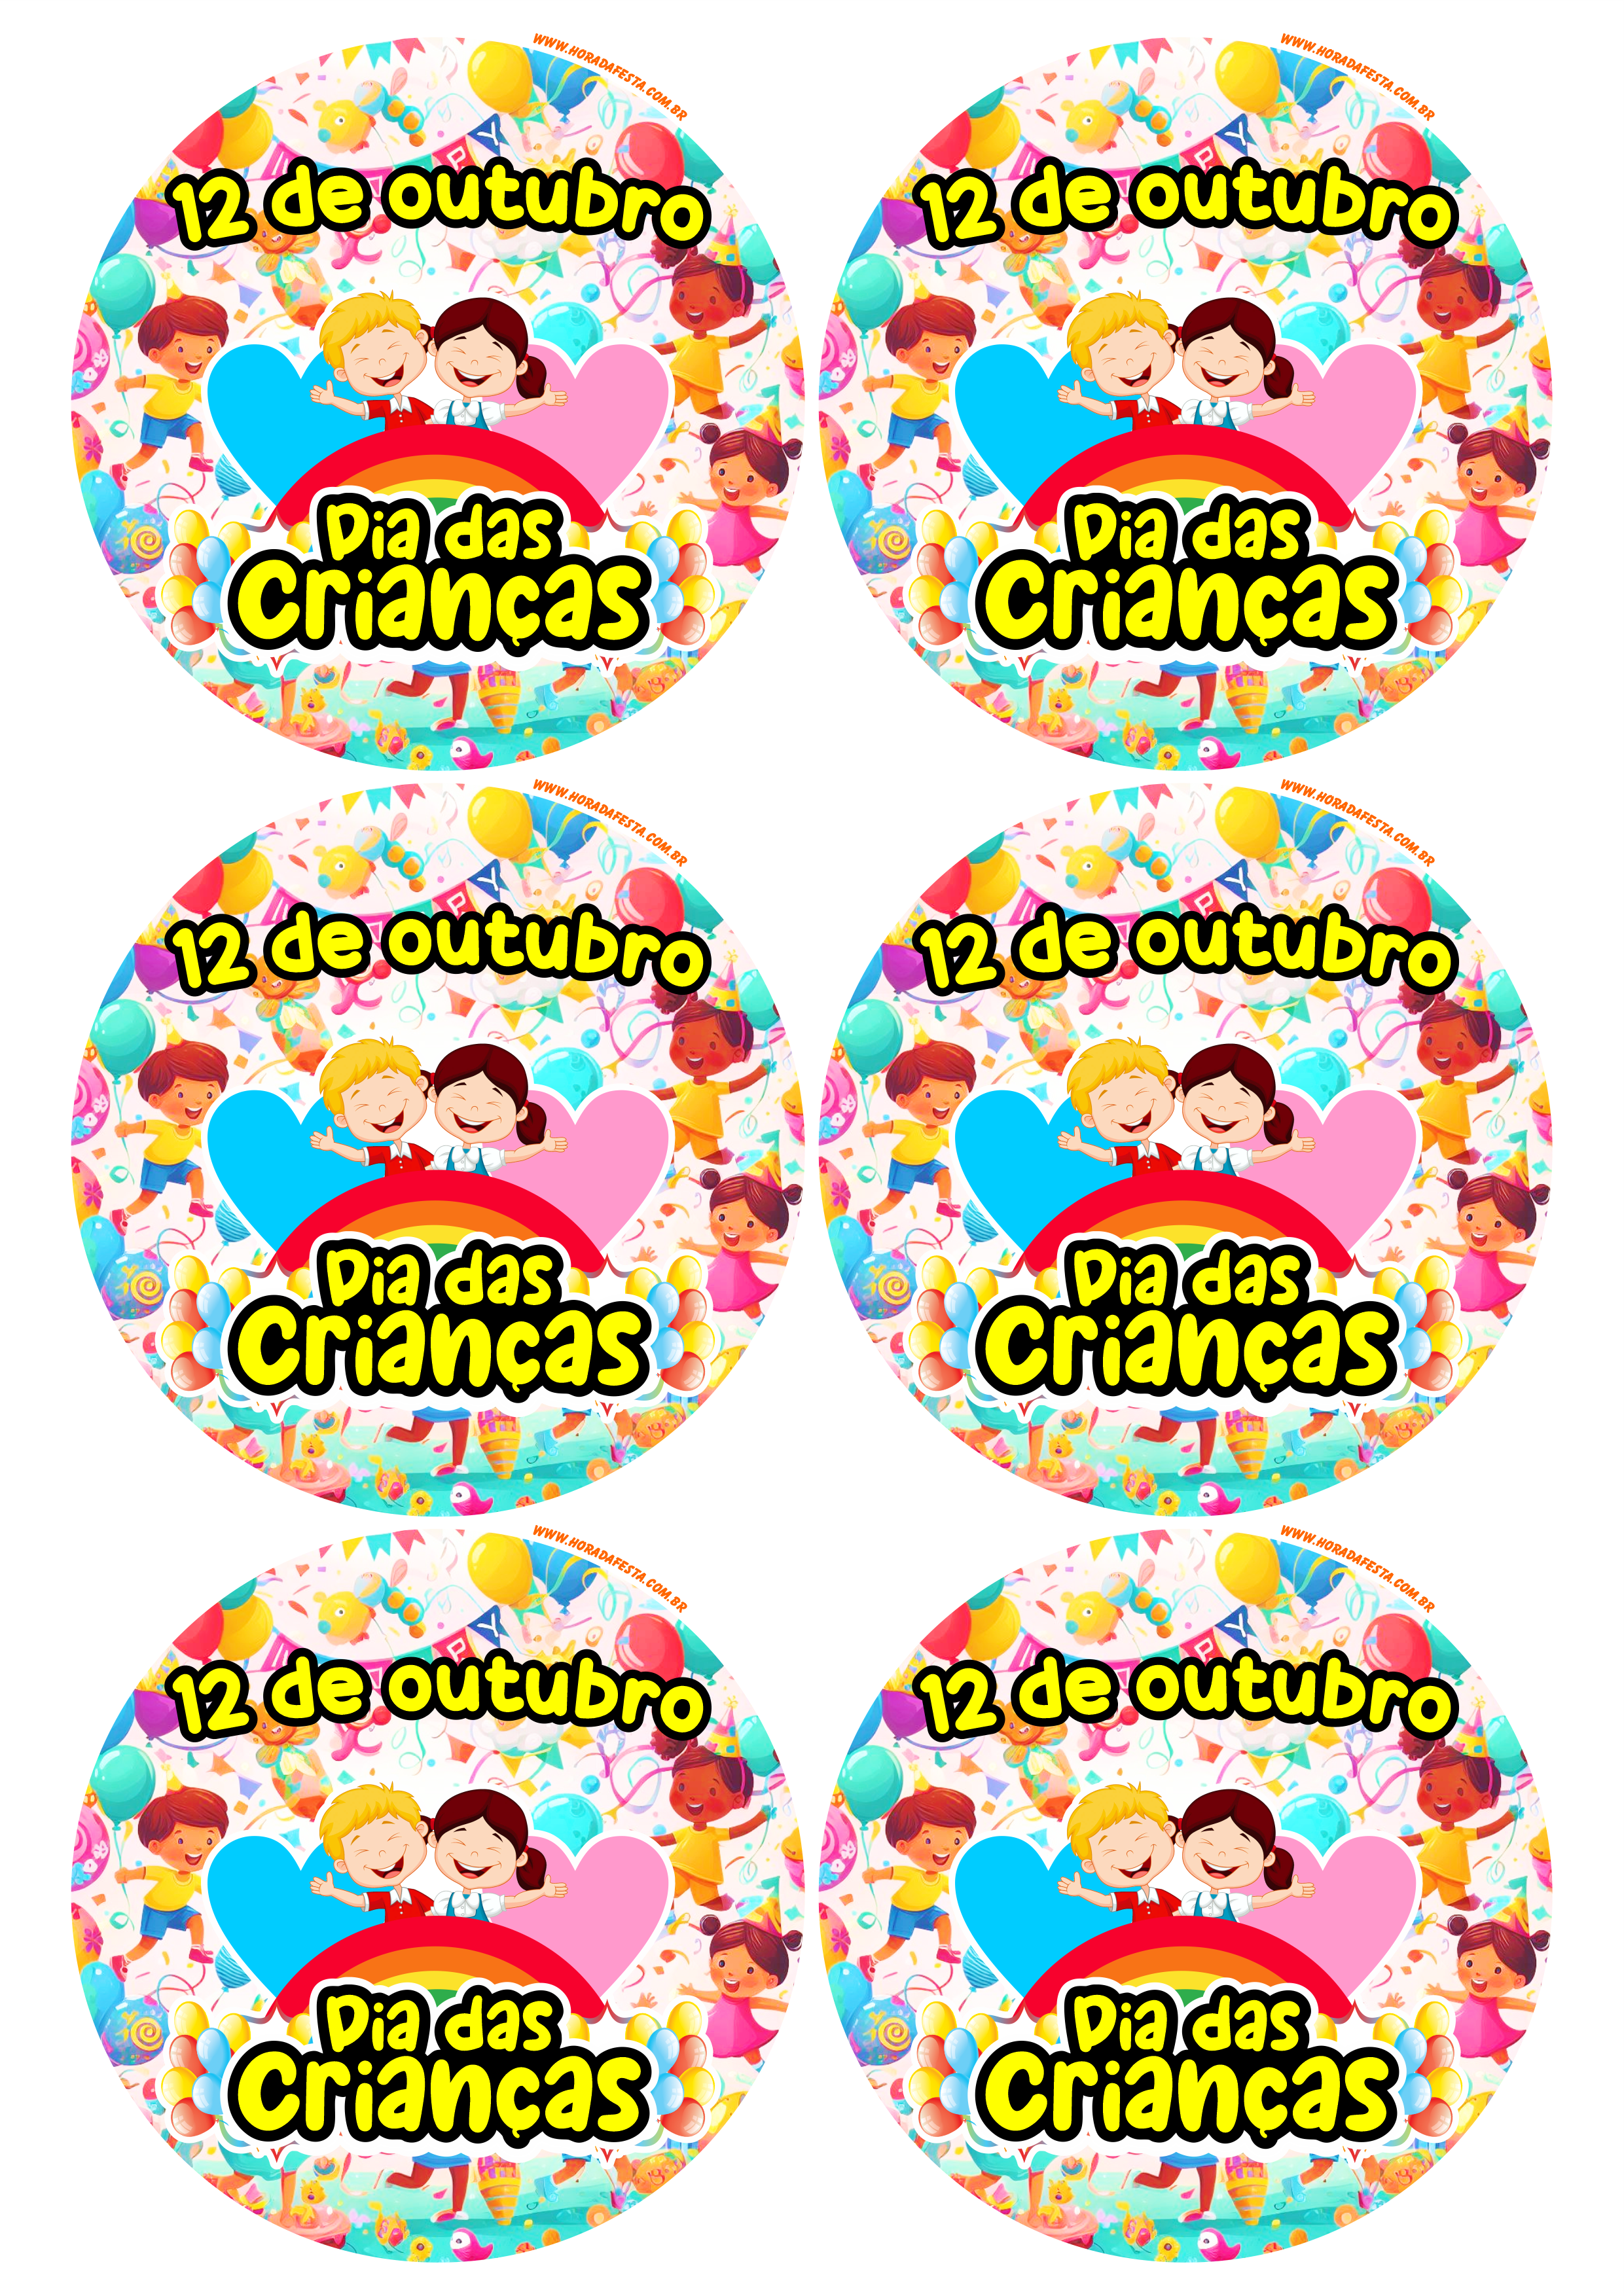 Dia das crianças 12 de outubro adesivo tag sticker etiqueta para decoração redondo 6 imagens png